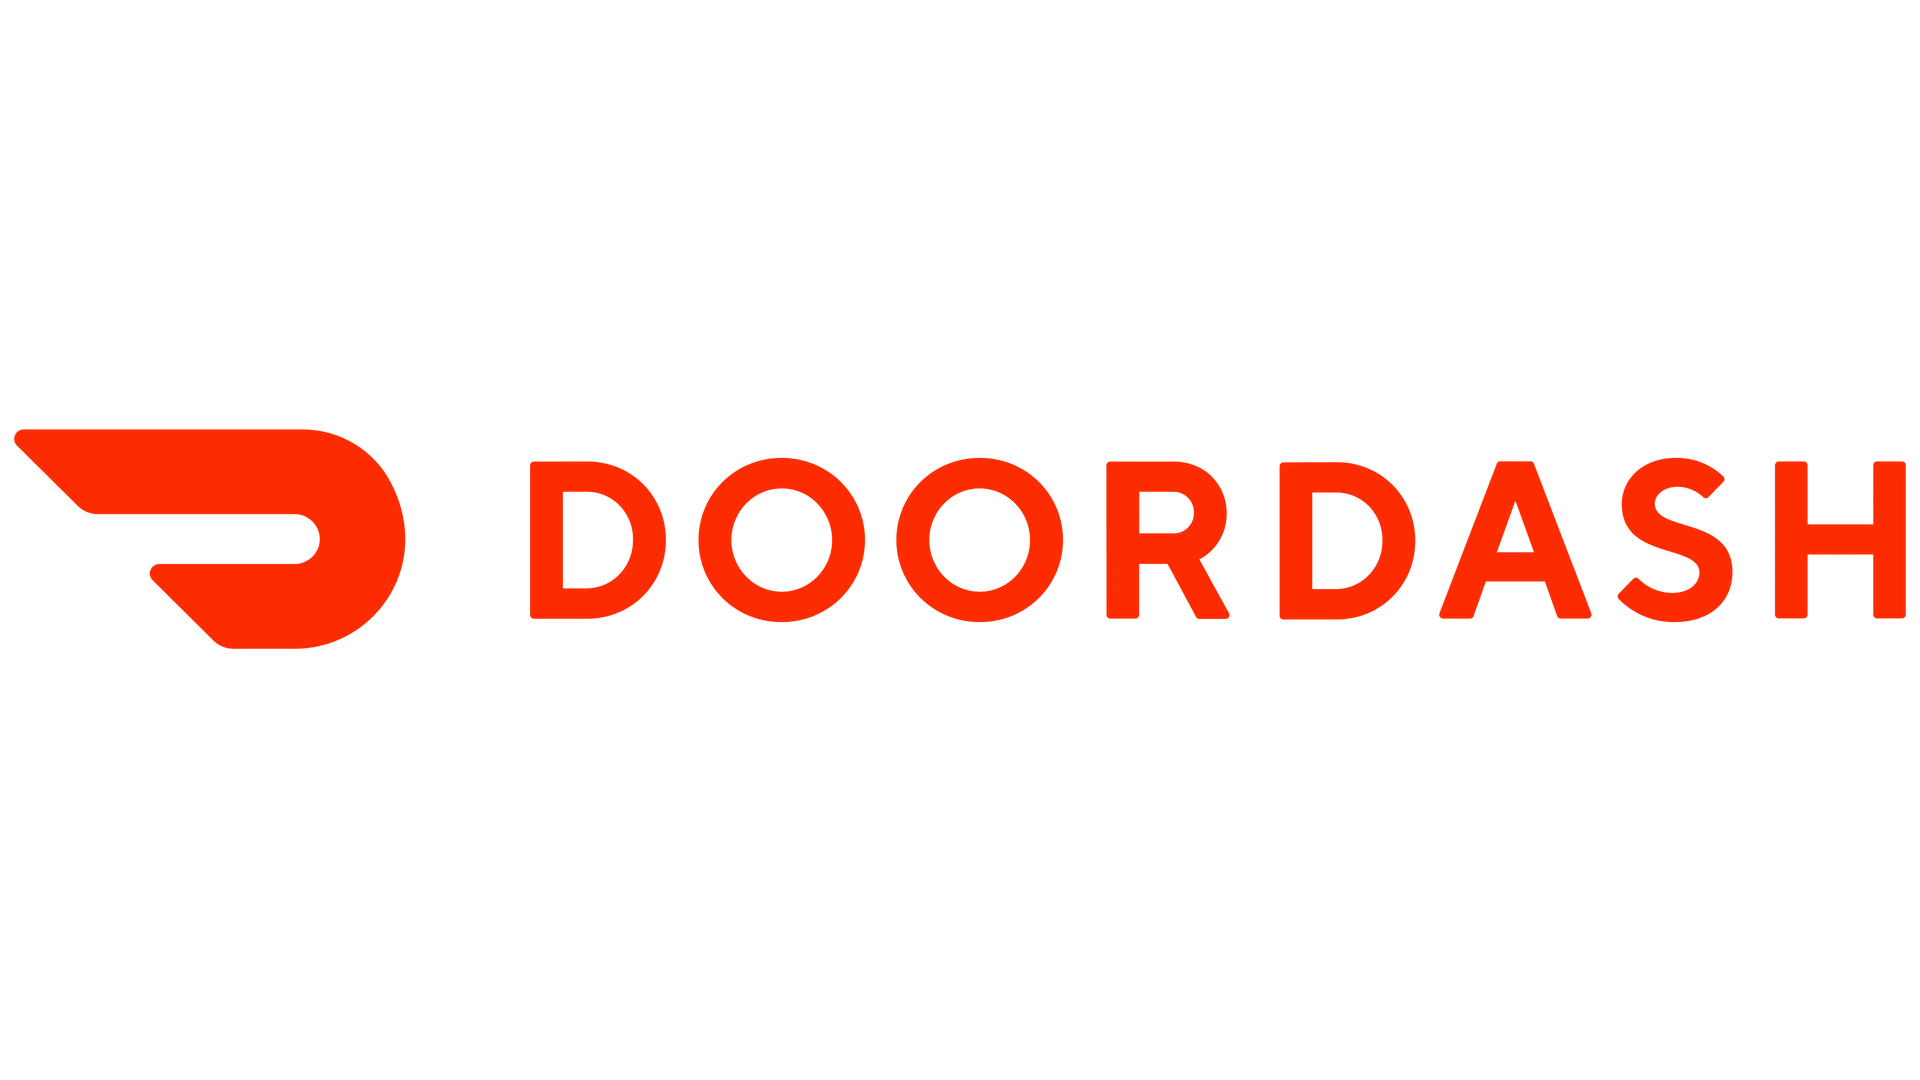 DoorDash Analytics Case Study